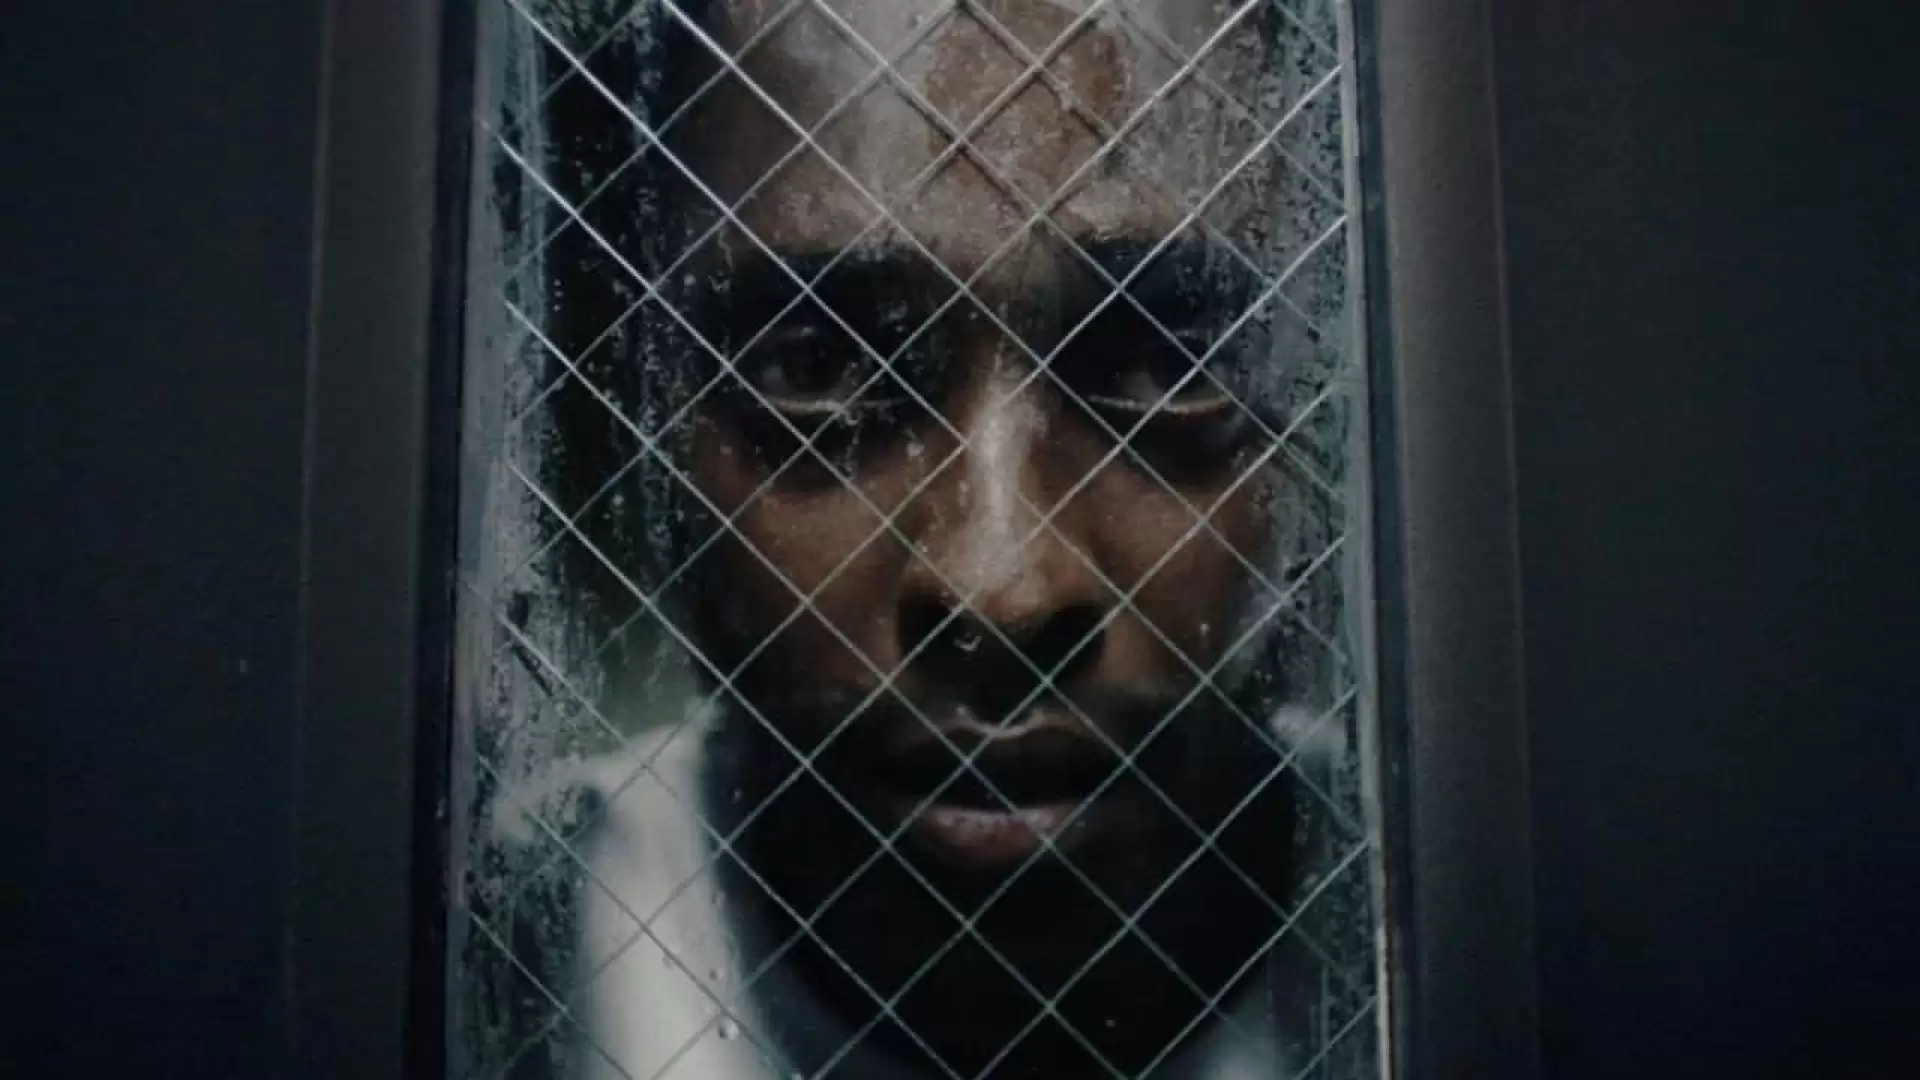 دانلود فیلم Caged 2021 (زندانی)